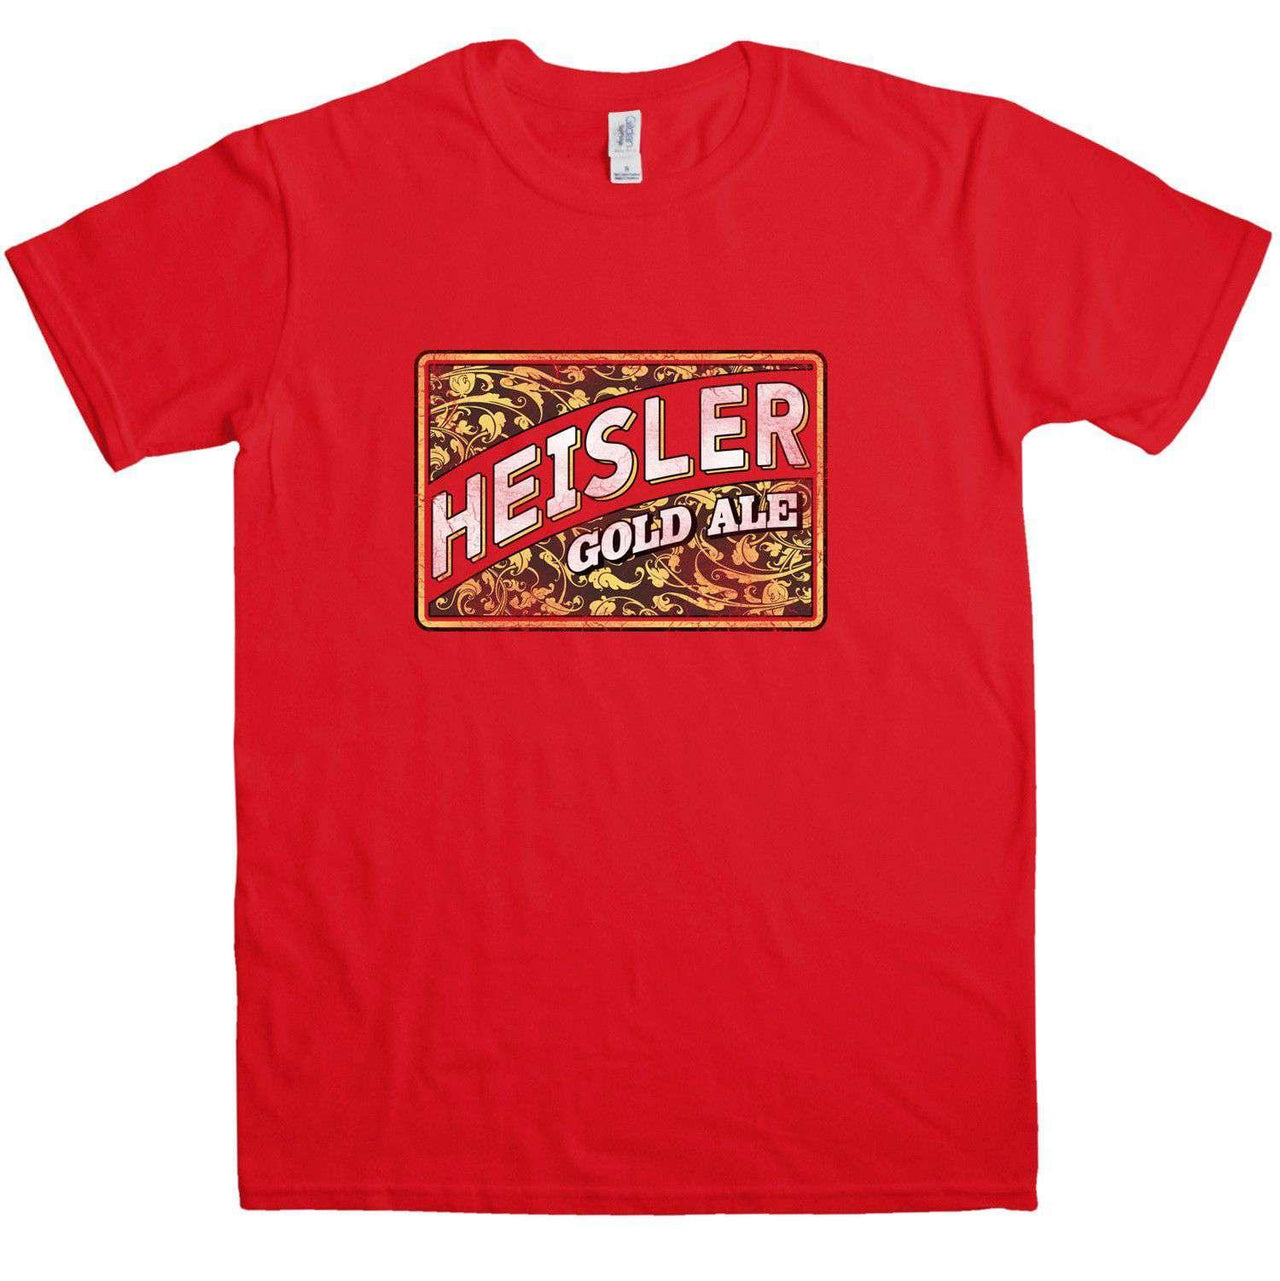 Heisler Gold Ale T-Shirt For Men, Inspired By Heisler Beer 8Ball